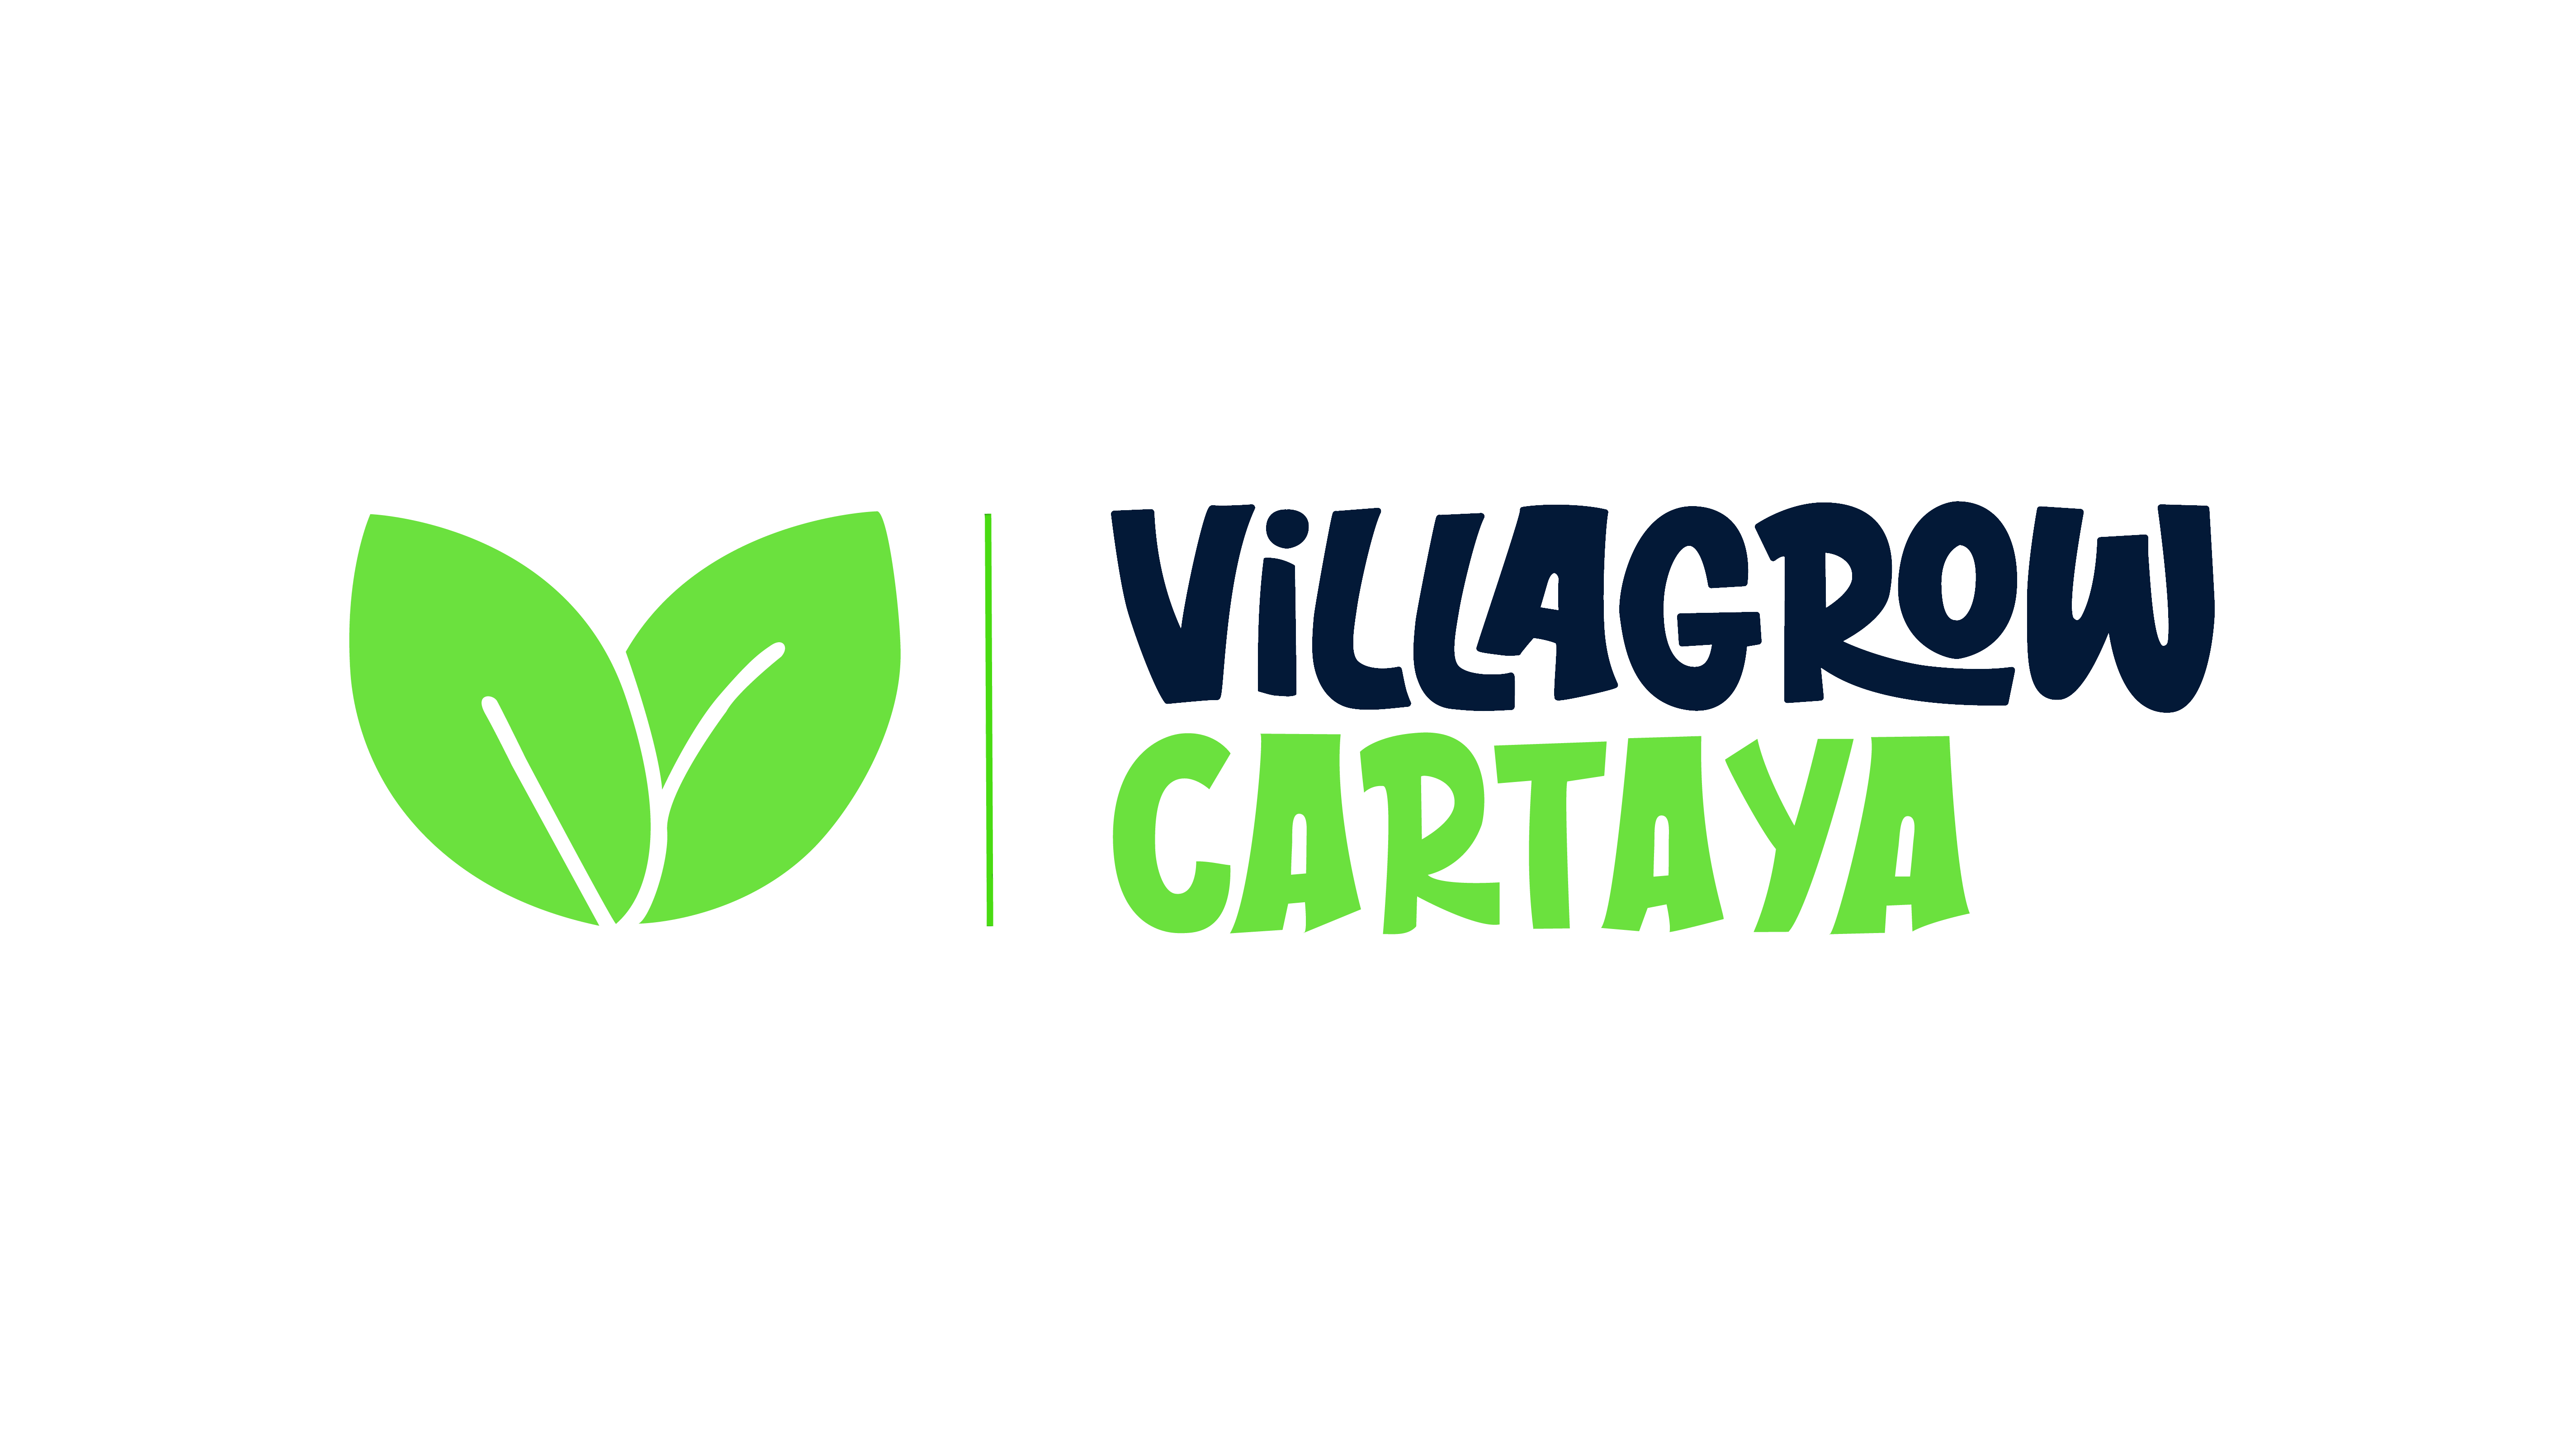 Villagrow Cartaya - Venta de activos no líquidos